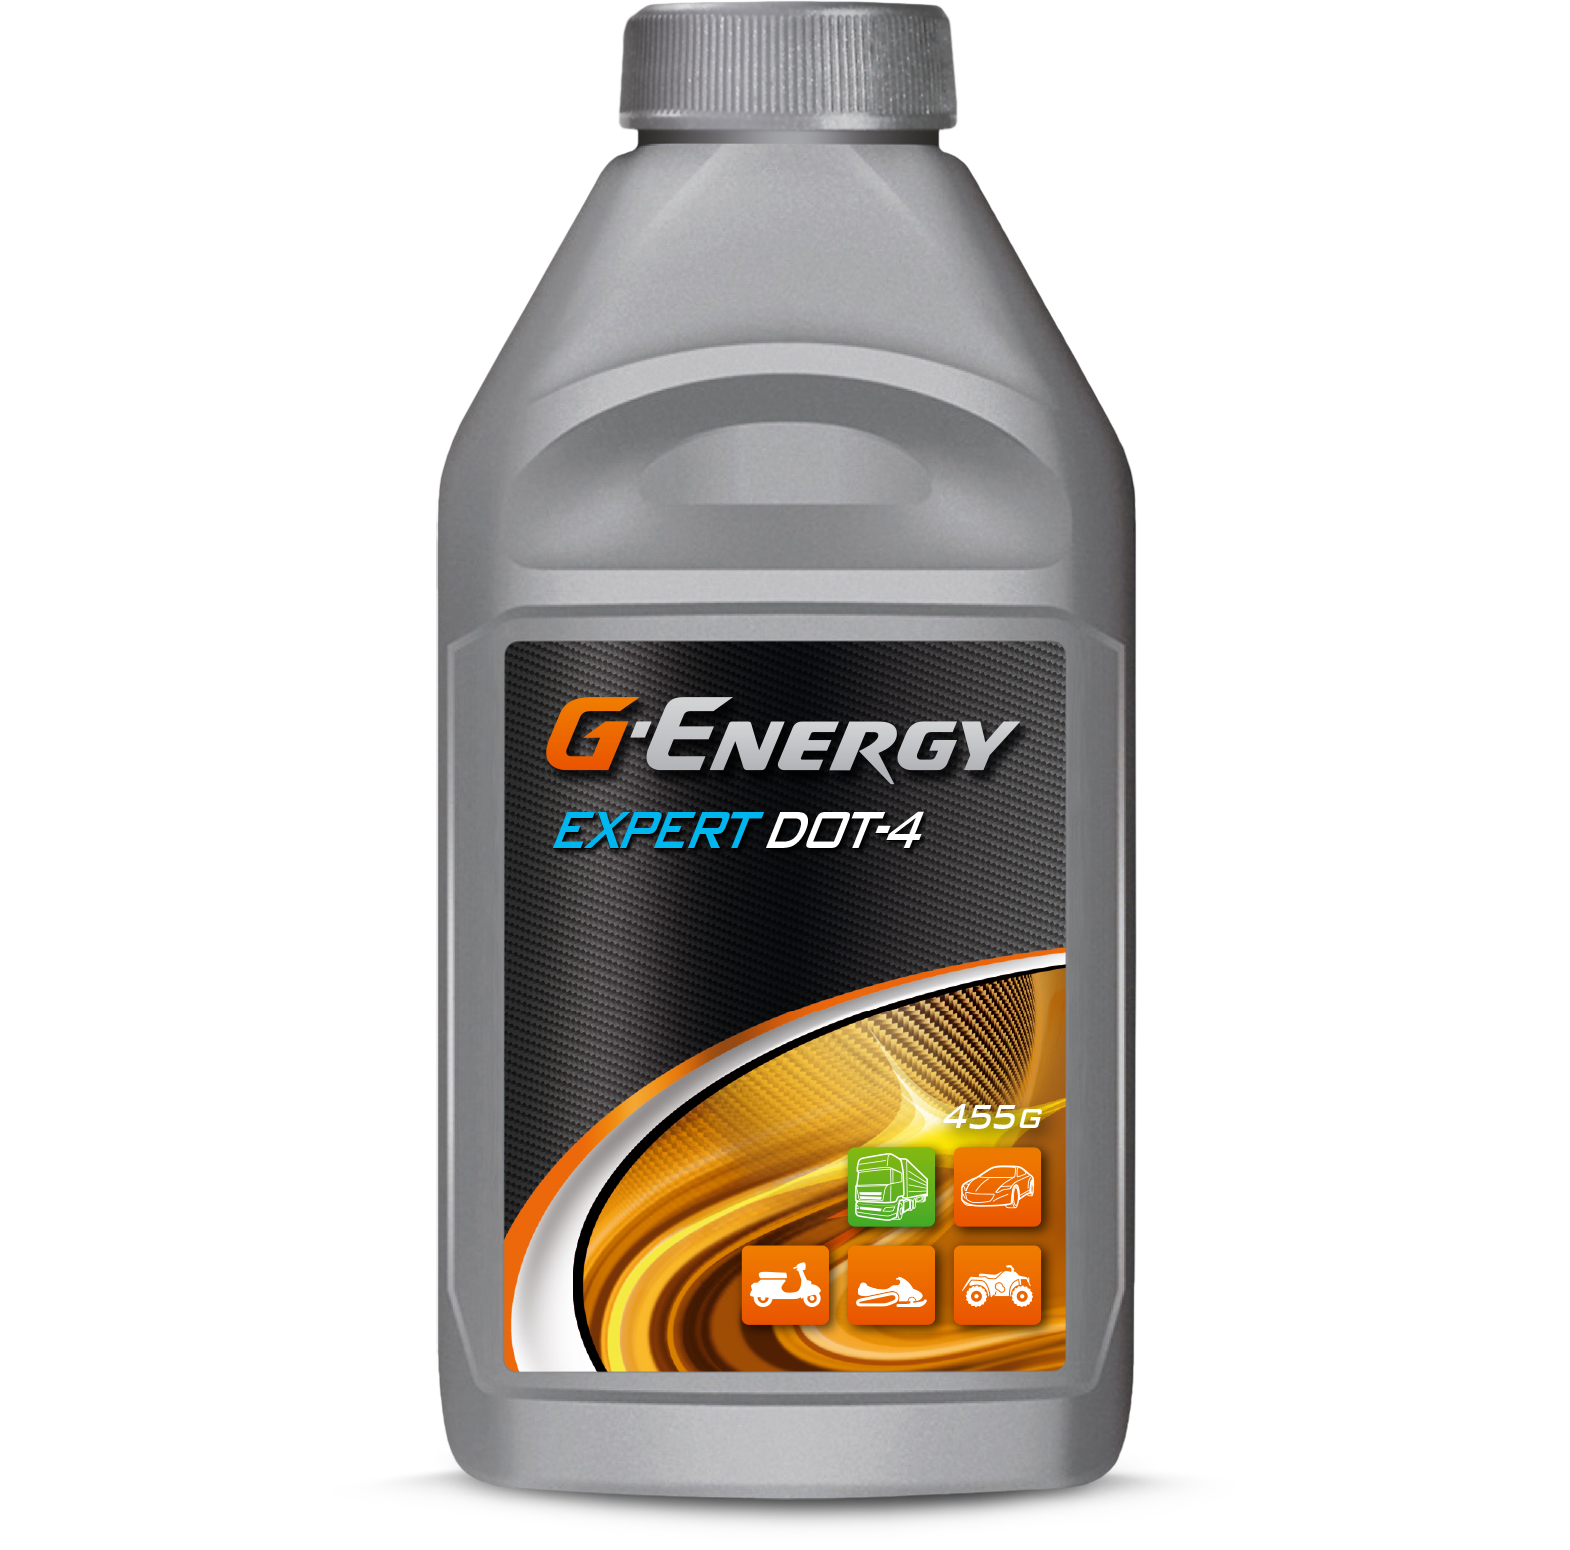 Тормозная жидкость G-Energy Expert DOT-4